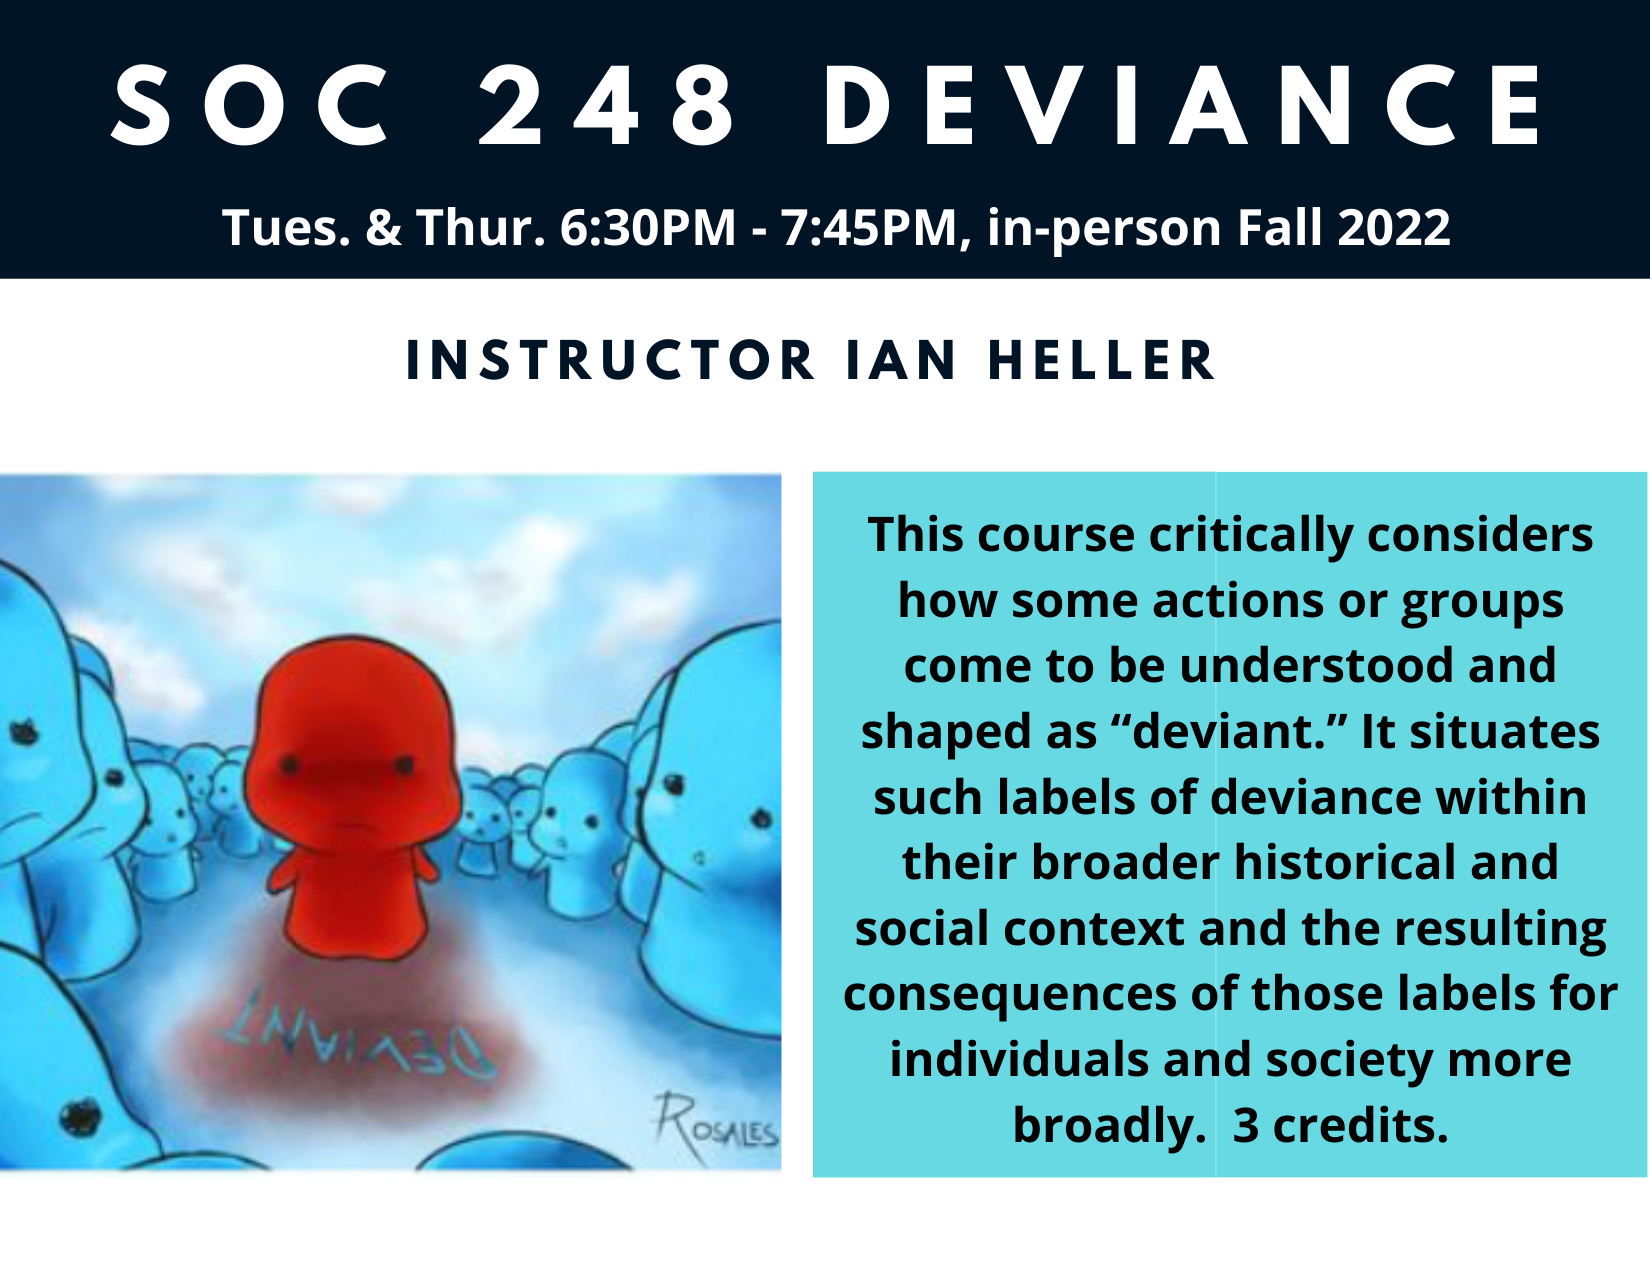 Deviance Course Description